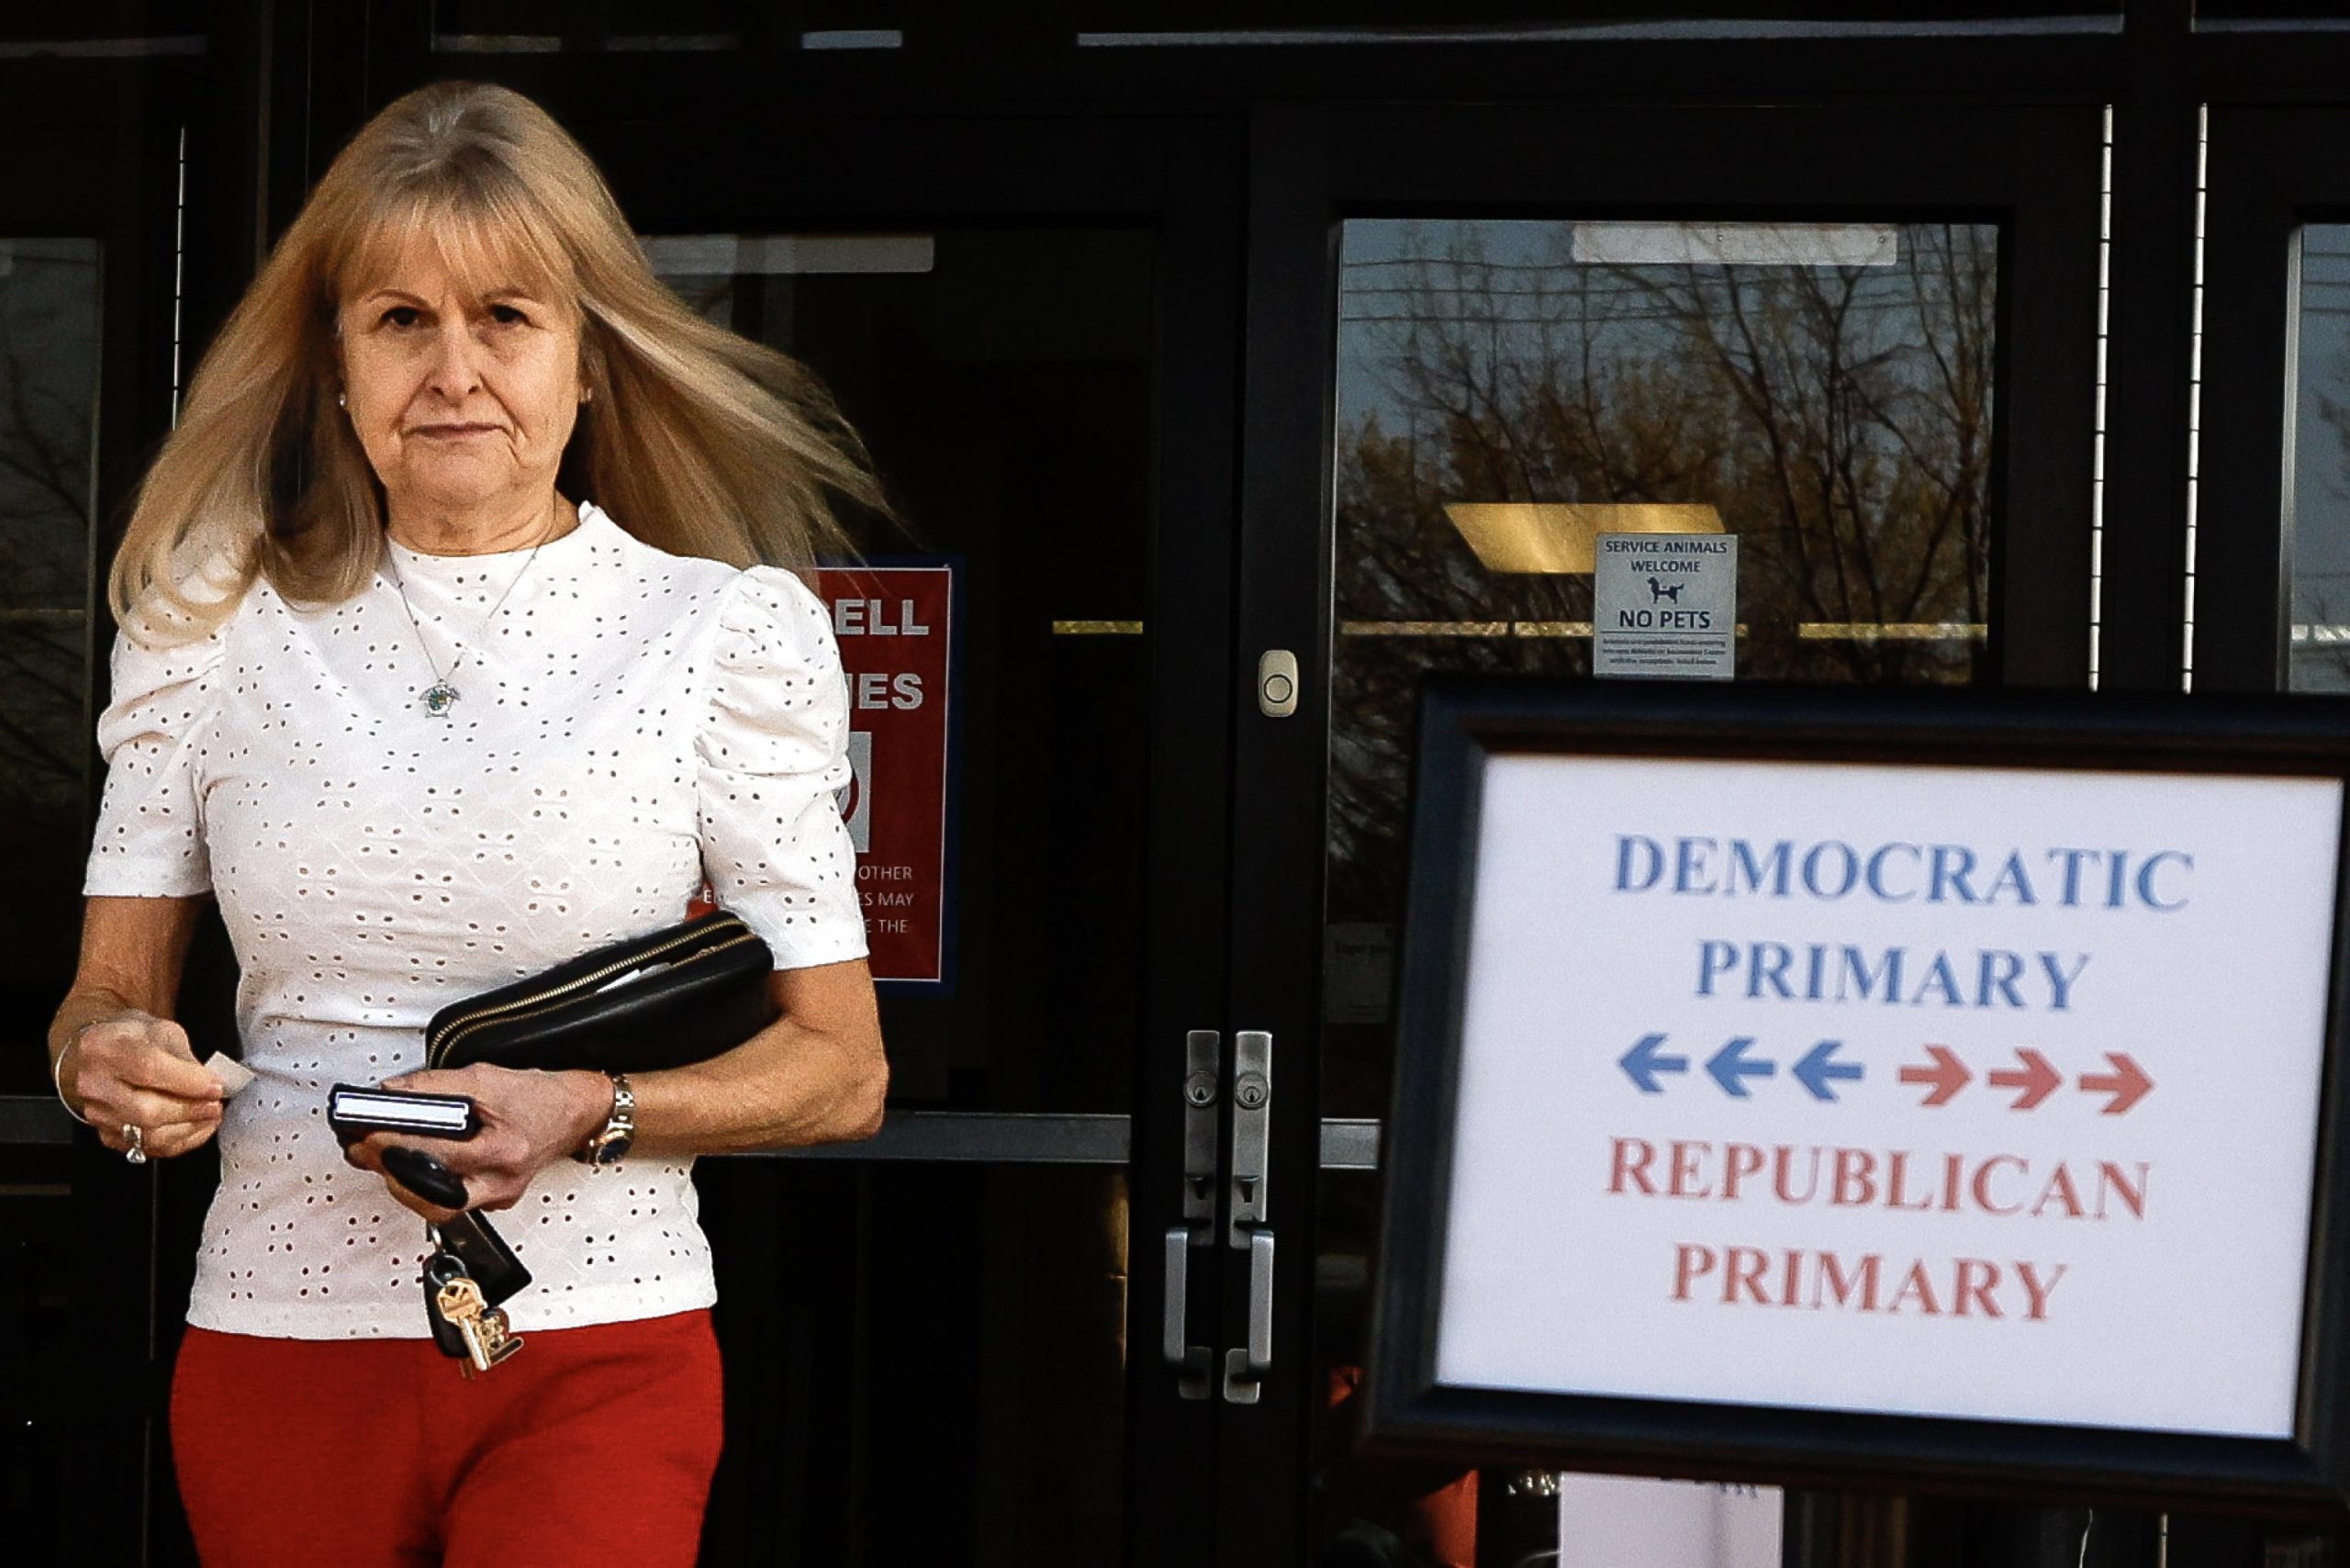 Una donna lascia l'area elettorale durante il Super Tuesday ad Arlington, Texas